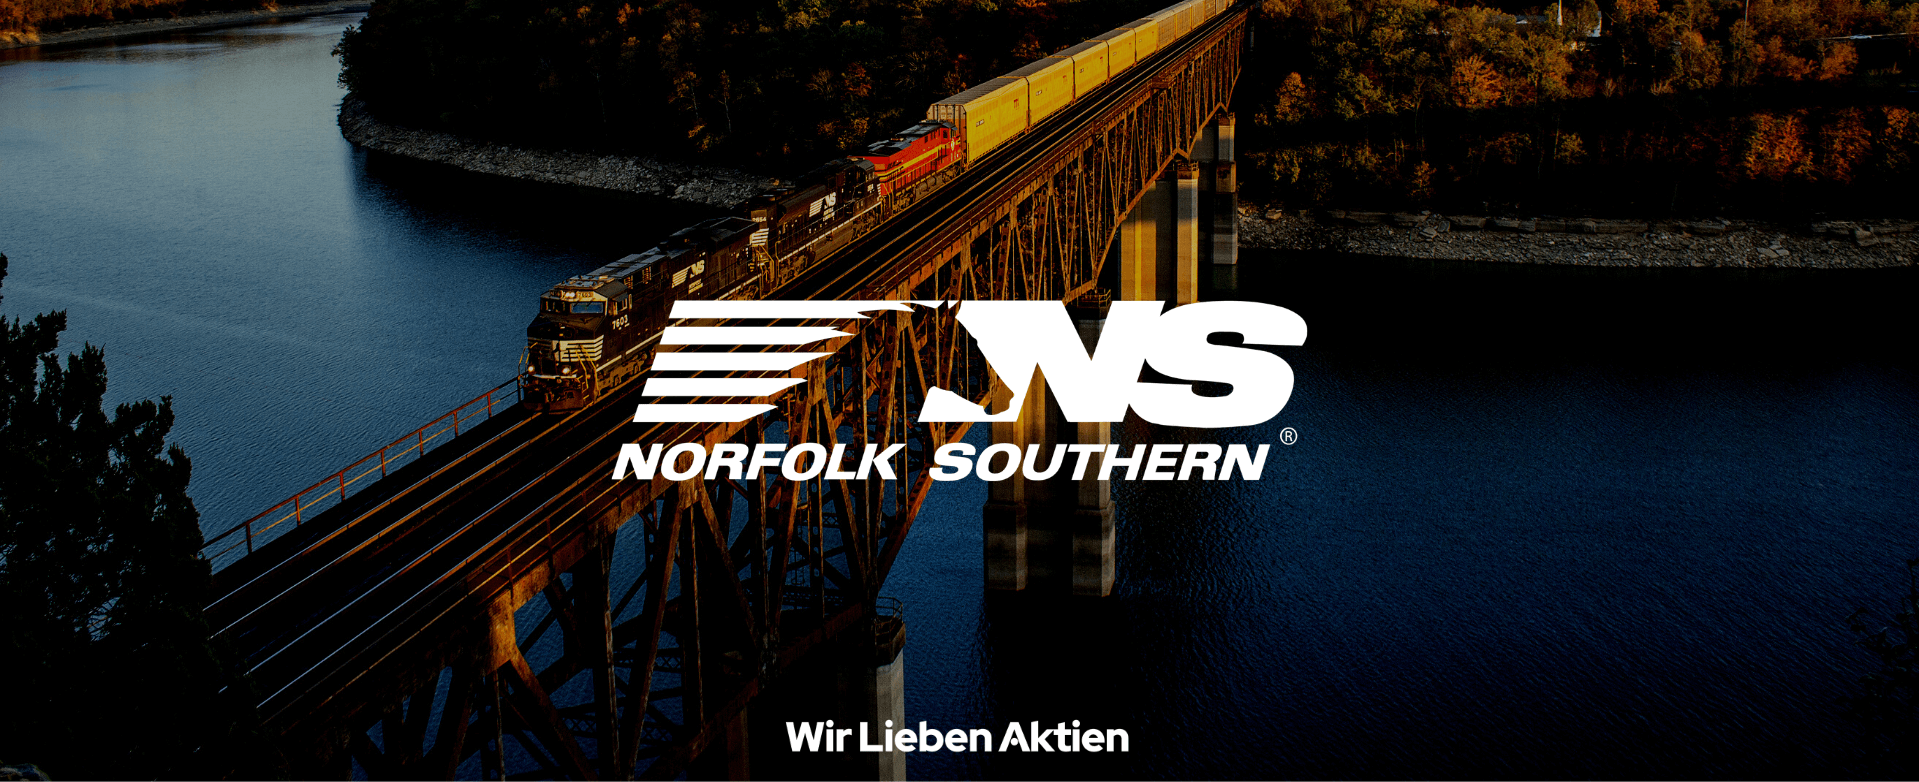 Norfolk Southern Aktie Analyse - Bessere Alternative zu Union Pacific?